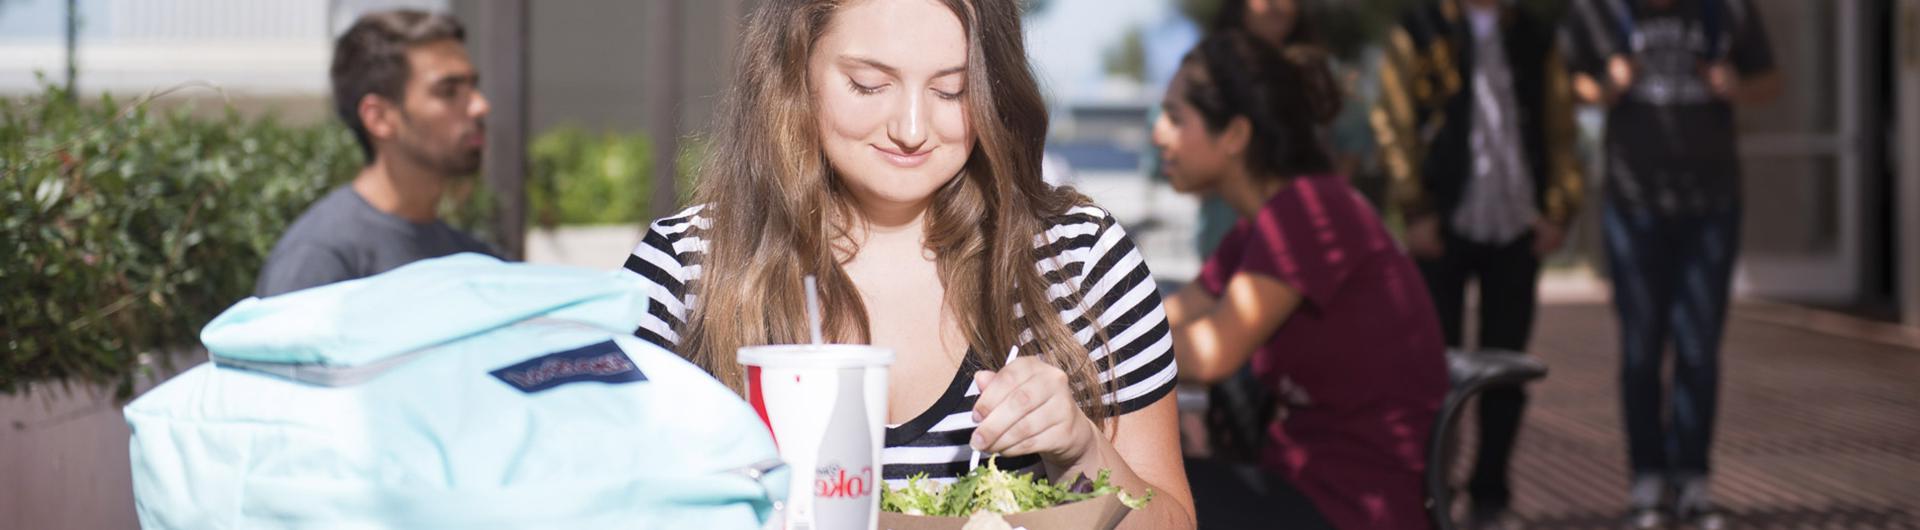 girl eating lunch